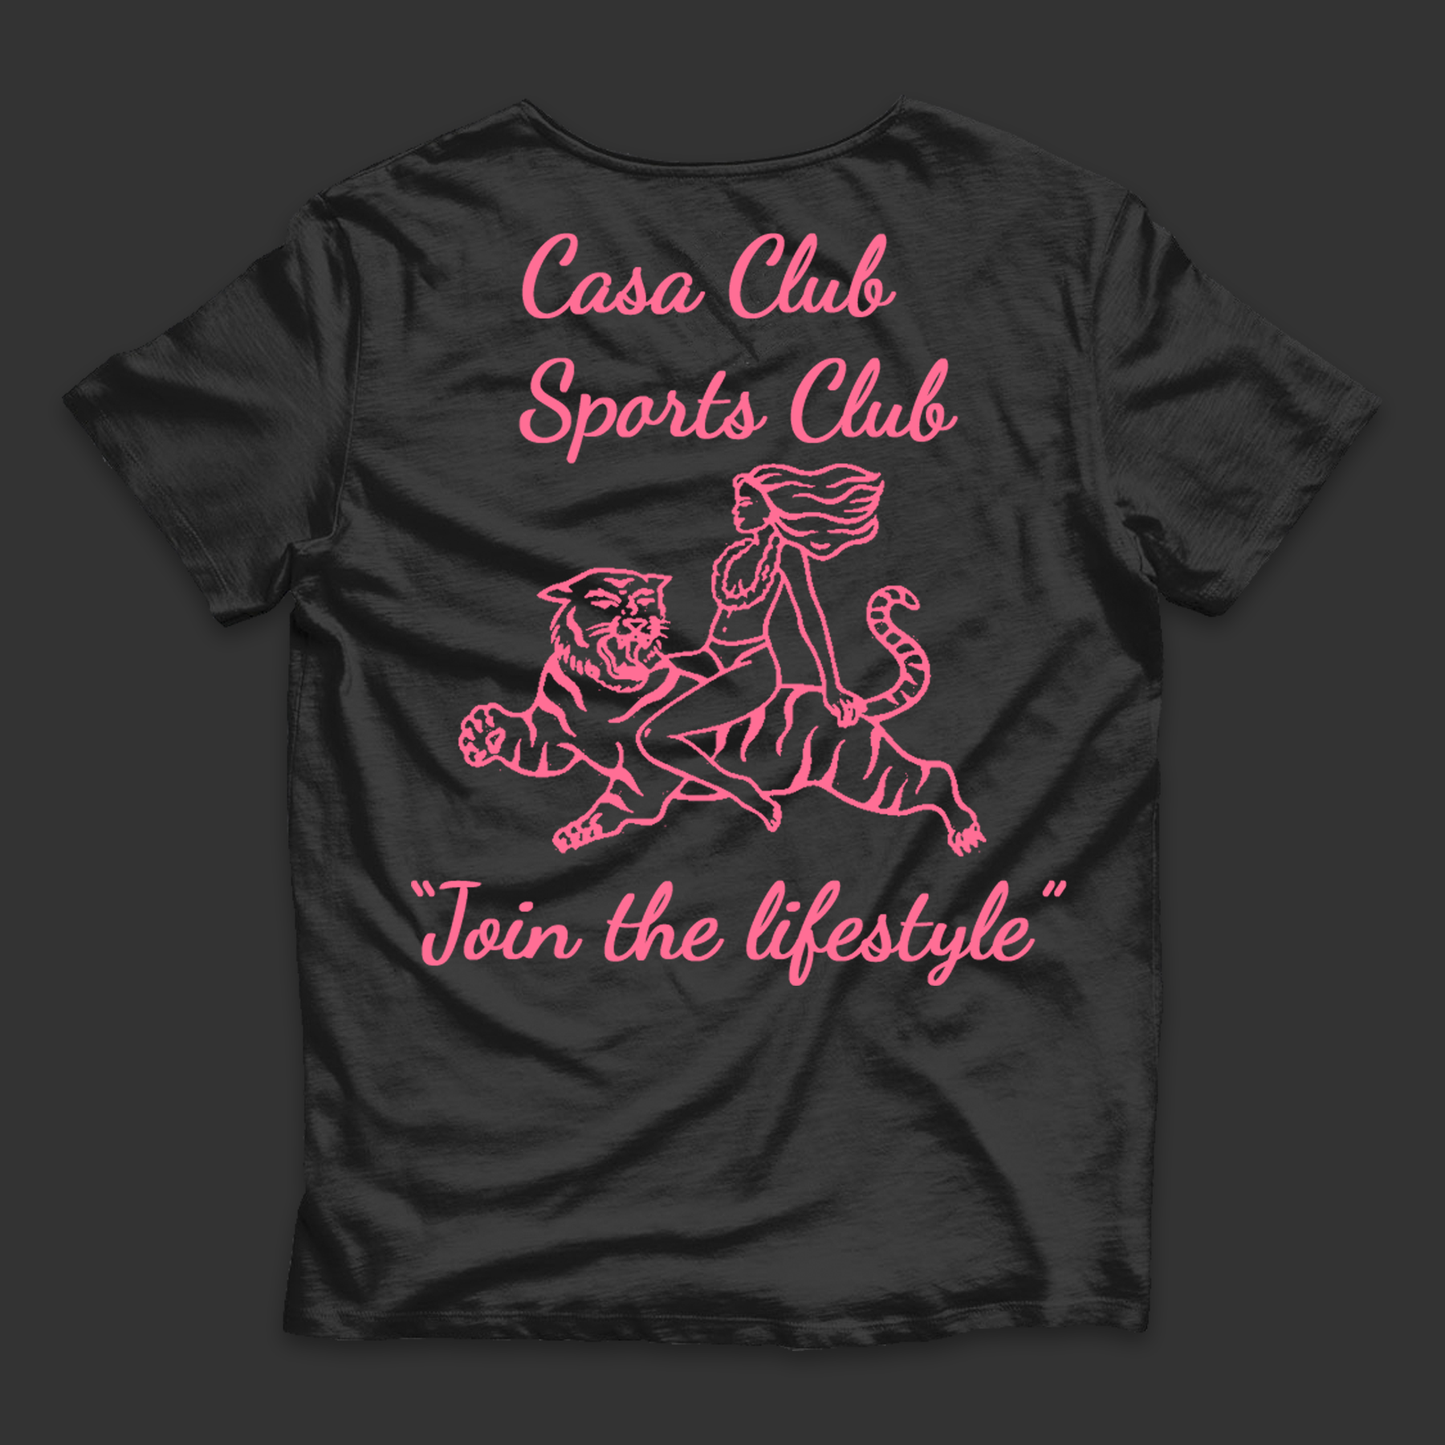 "CASA CLUB SPORTS CLUB 001" - Playera Negra de Manga Corta